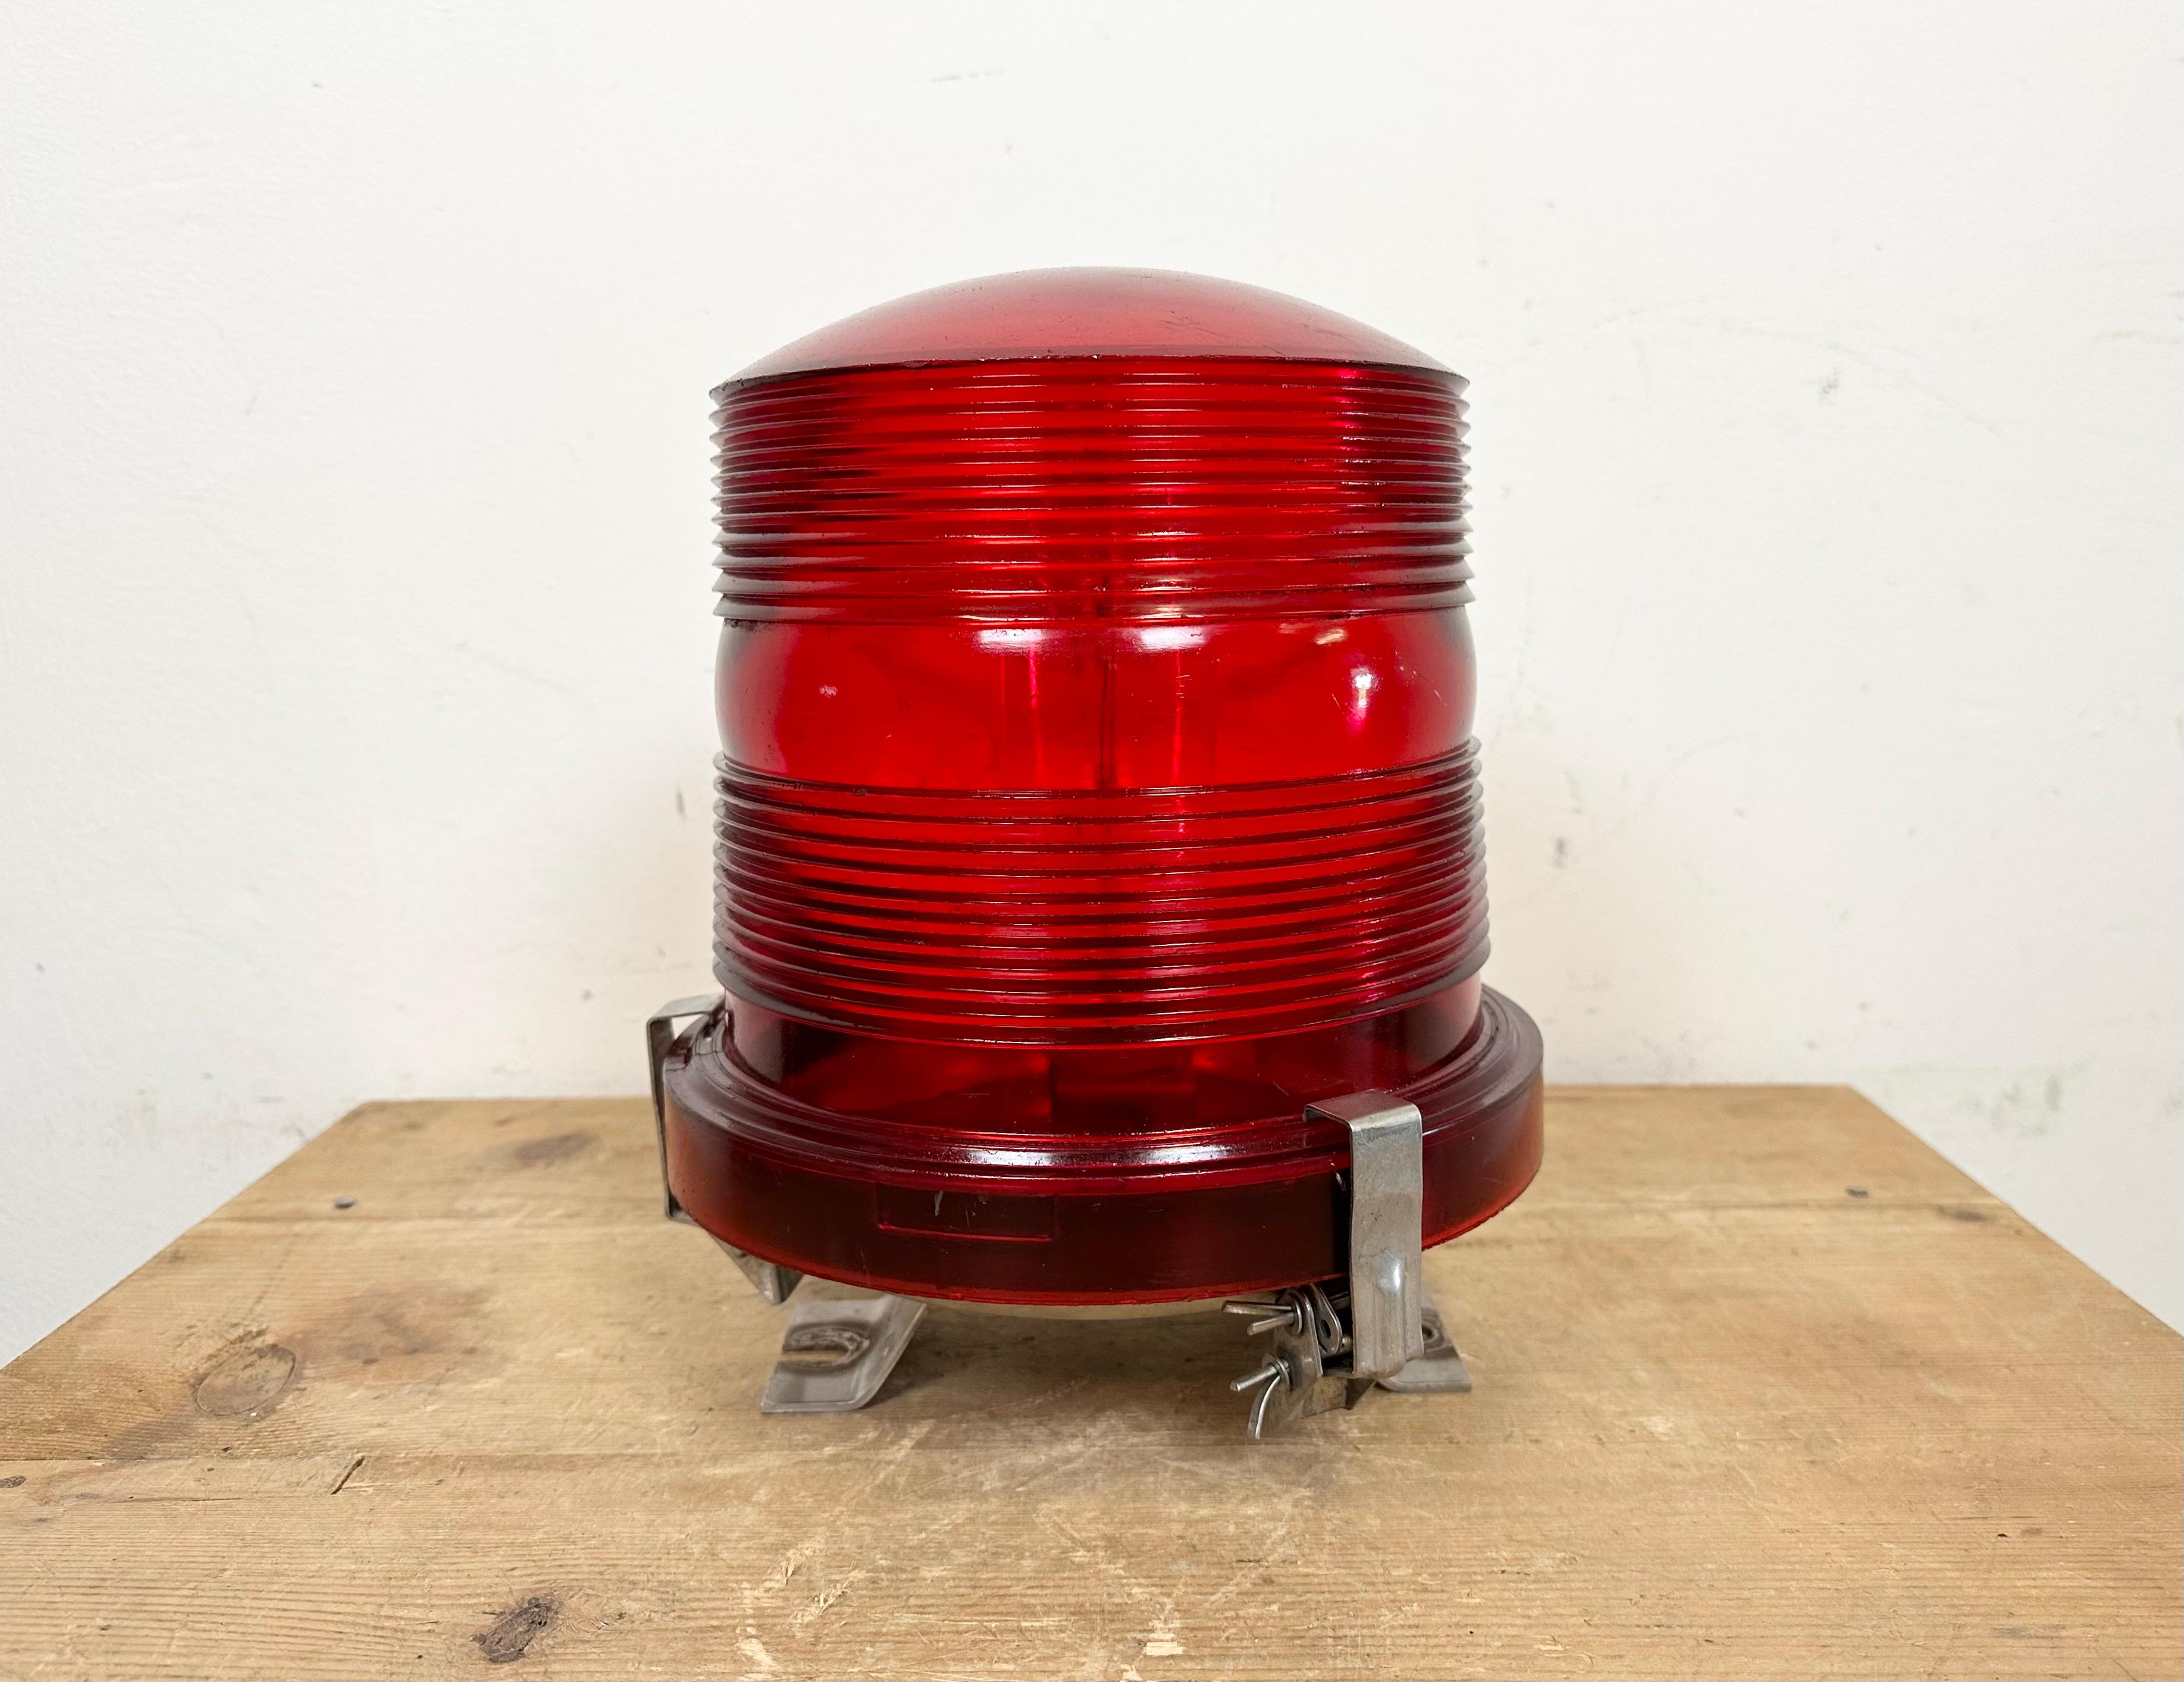 Lampadaire industriel vintage de piste d'aéroport fabriqué par Polam Wilkasy en Pologne dans les années 1960. Il est doté d'une fixation au sol en fer et d'un couvercle en plexiglas rouge.
Le diamètre de la lampe est de 23 cm. Le poids est de 1,7